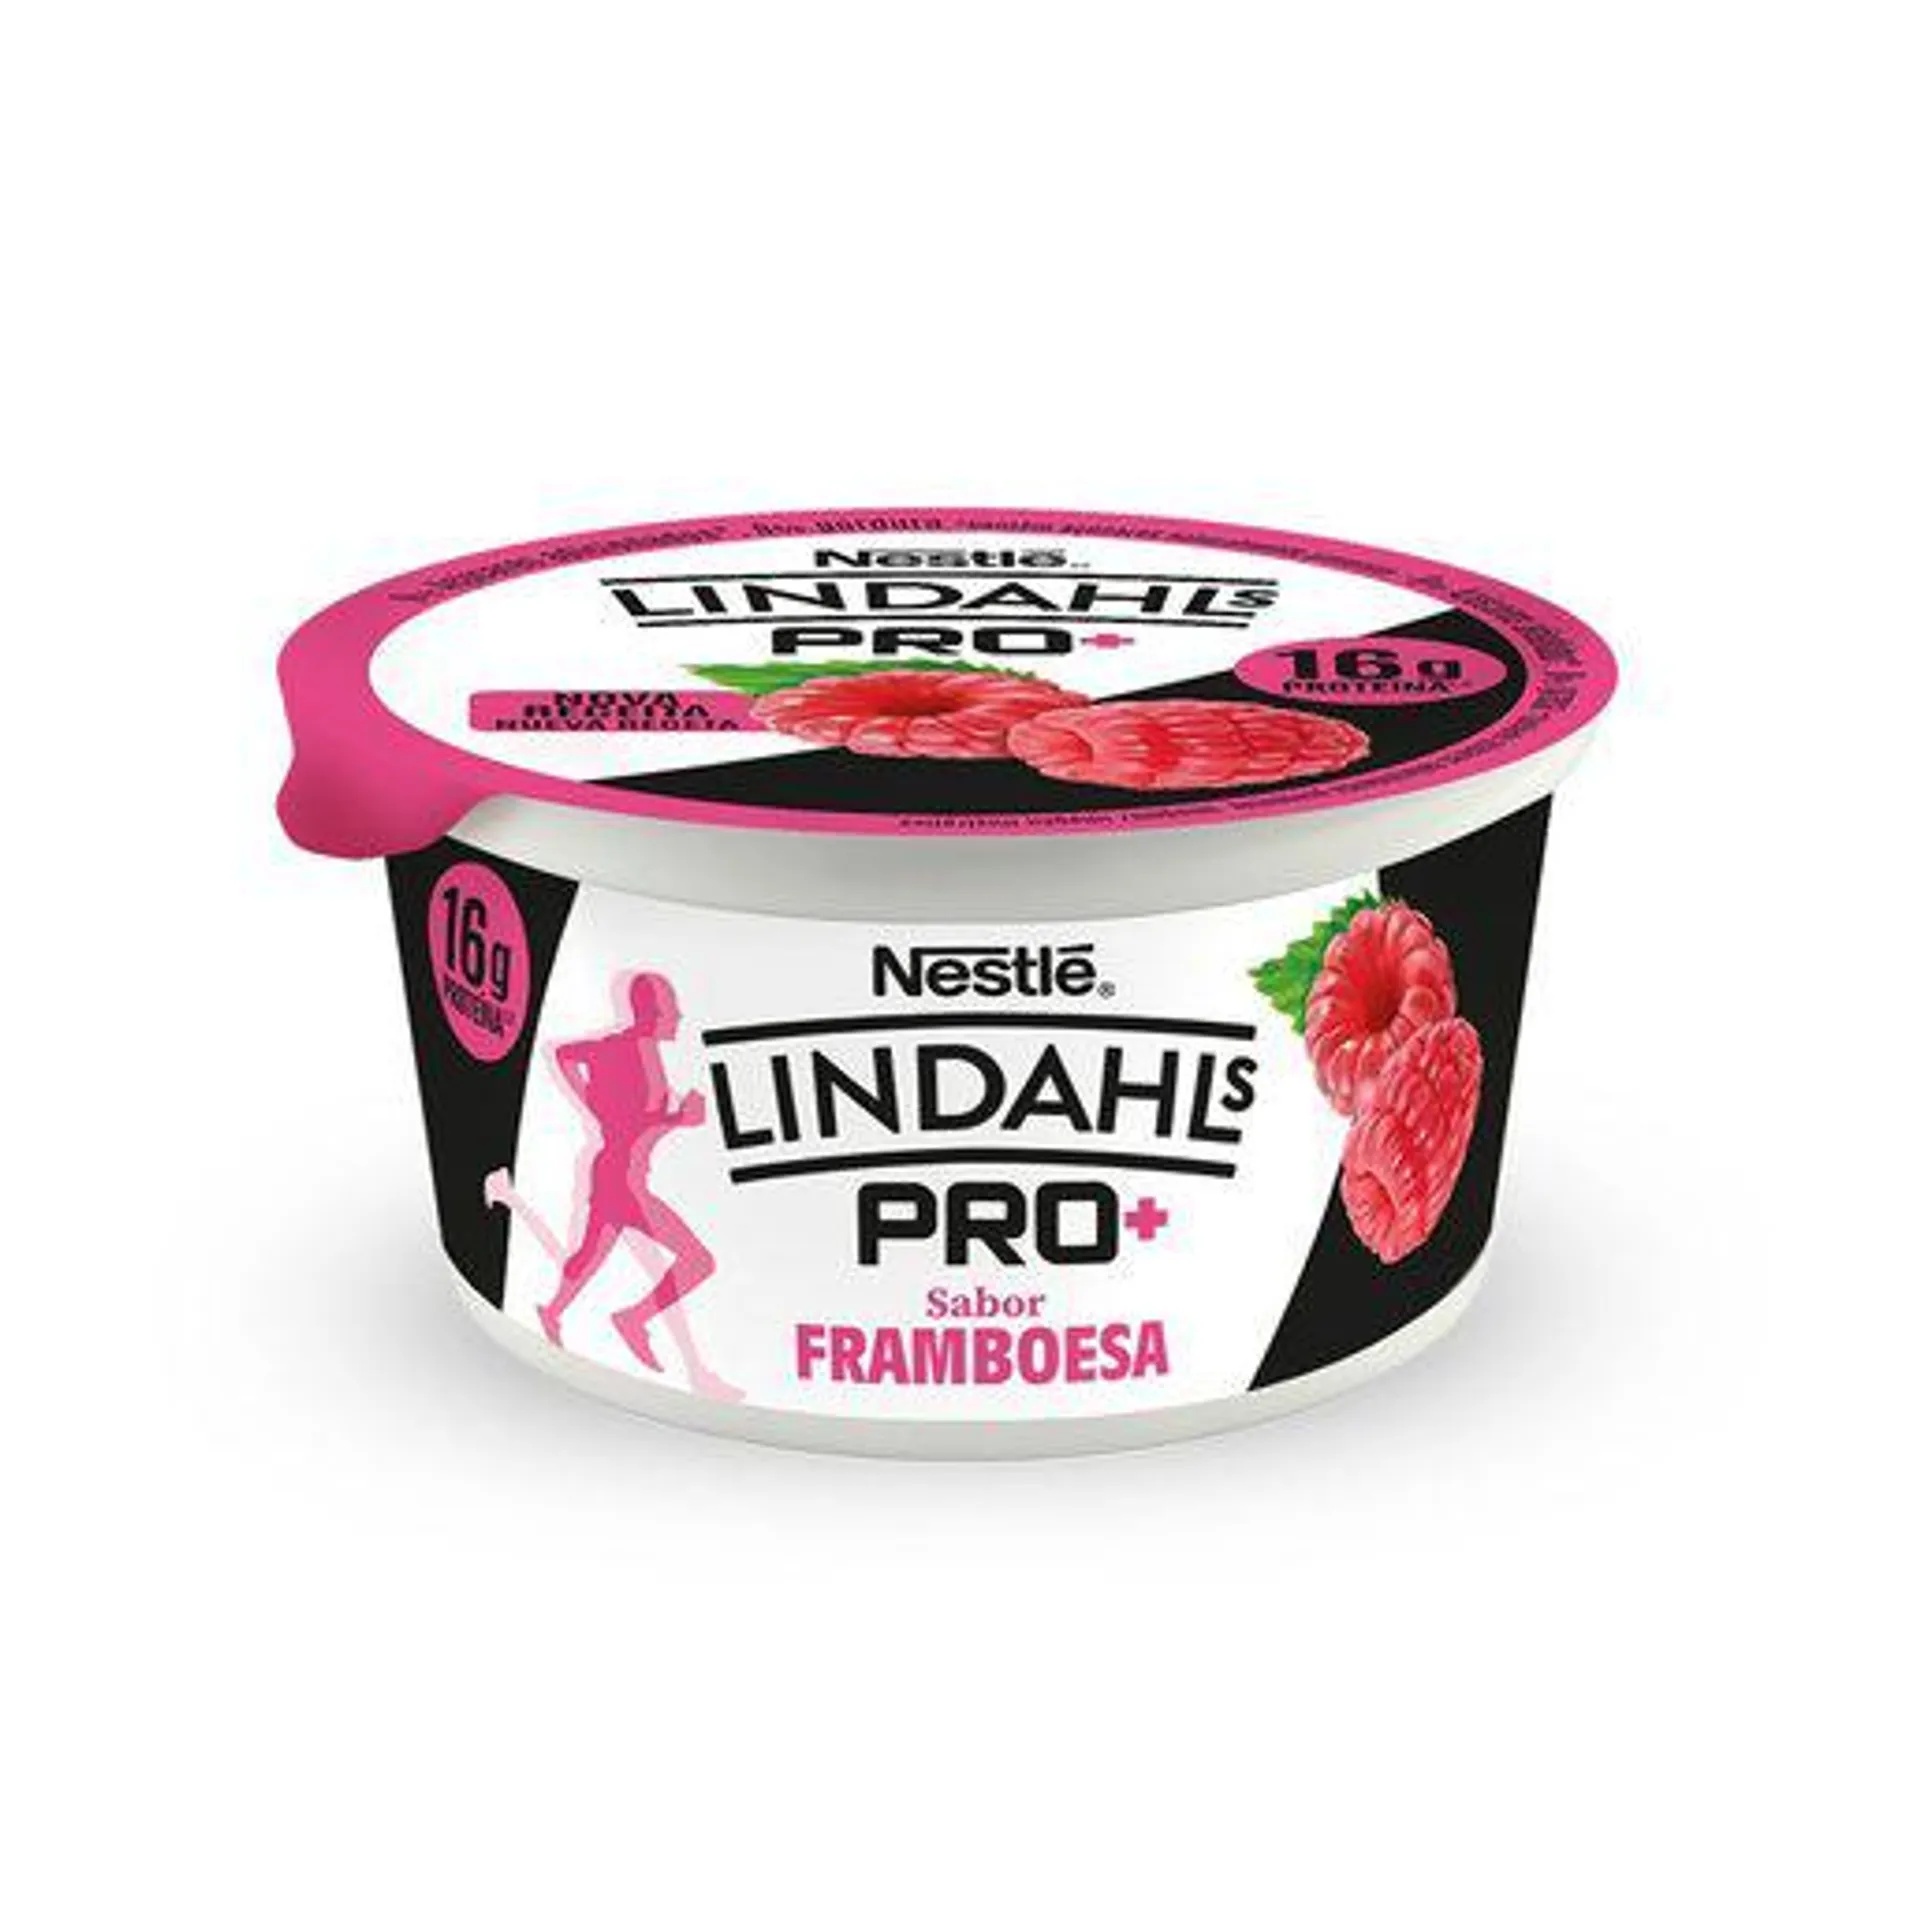 LINDAHLS Iogurte Proteico Framboesa Pro+ 160 g